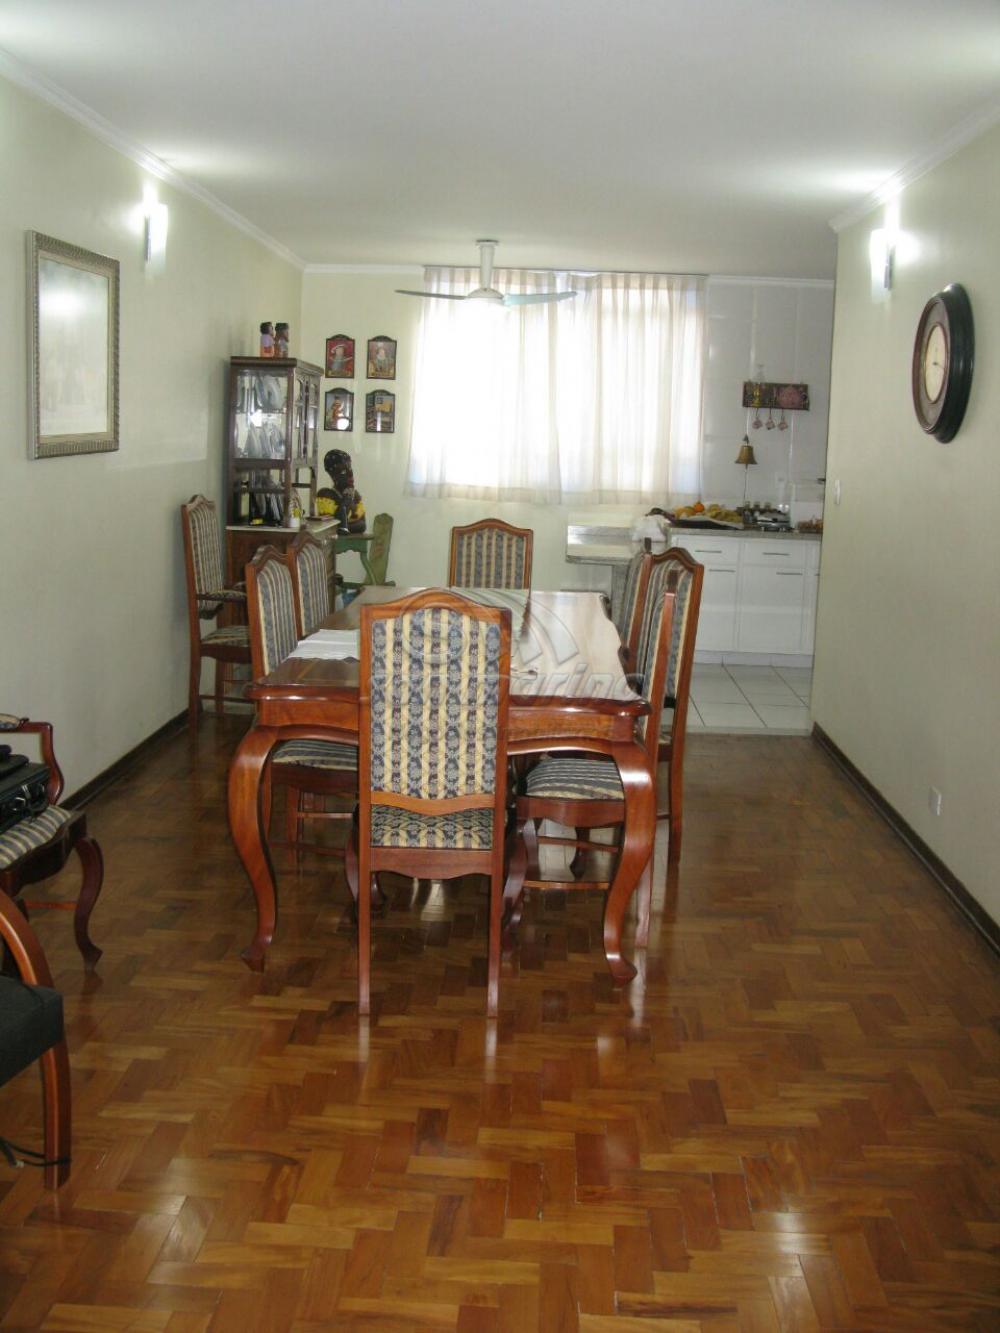 Apartamentos / Padrão em Ribeirão Preto - foto 2